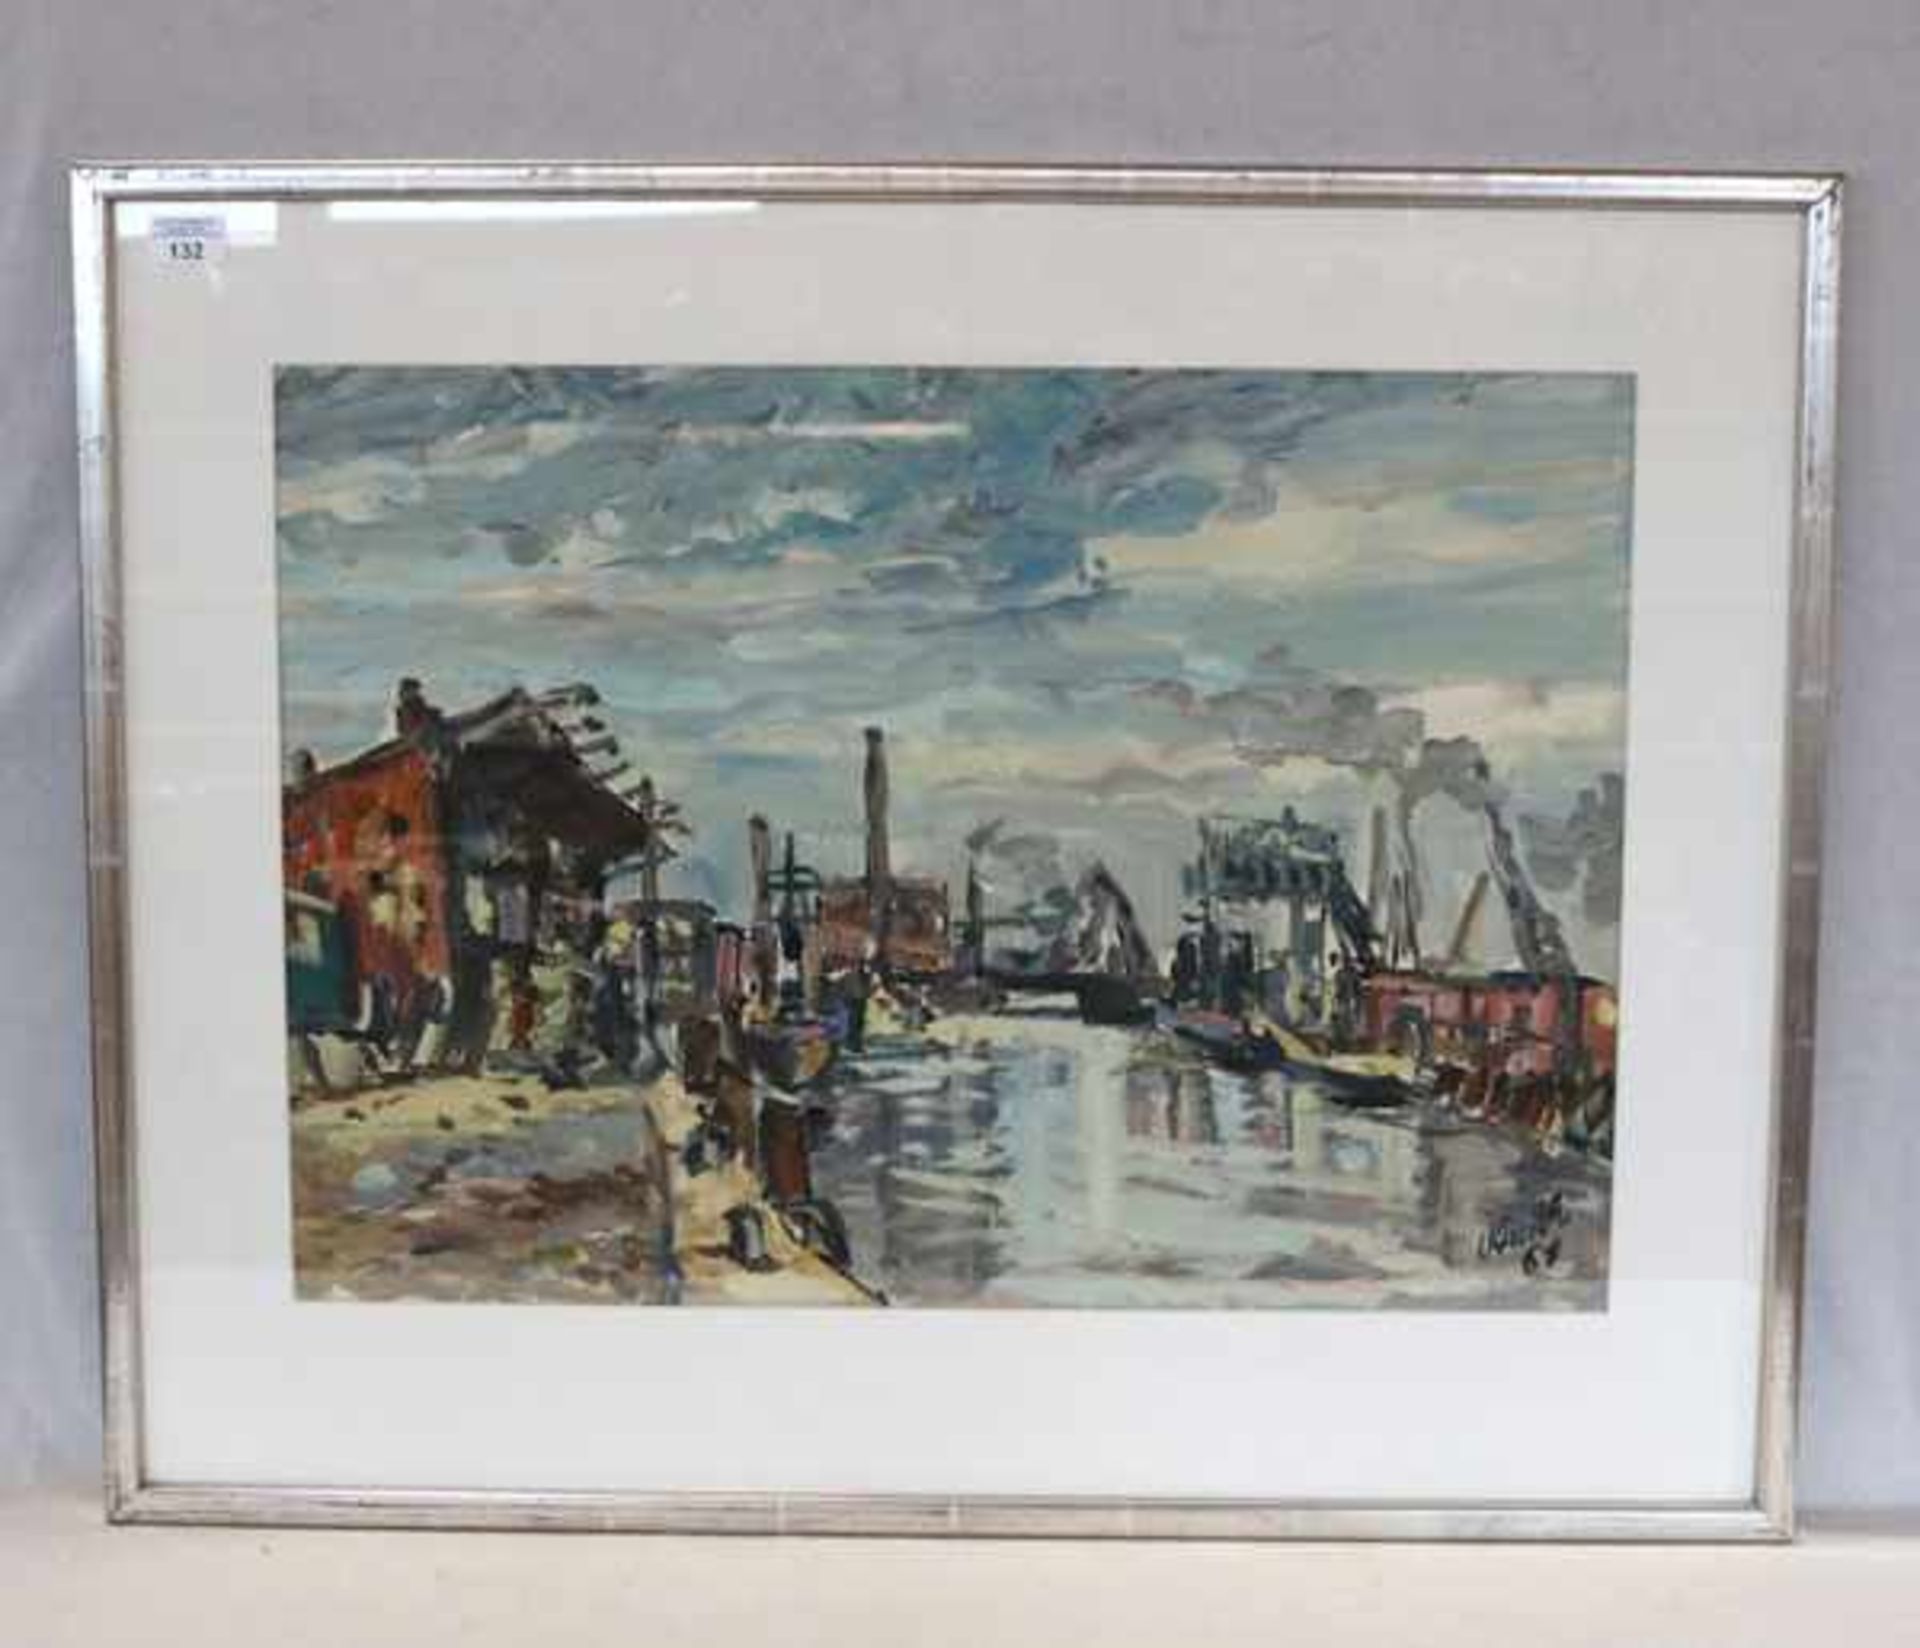 Gemälde Mischtechnik 'Hafen-Szenerie', signiert Knuth, datiert 61, mit Passepartout unter Glas